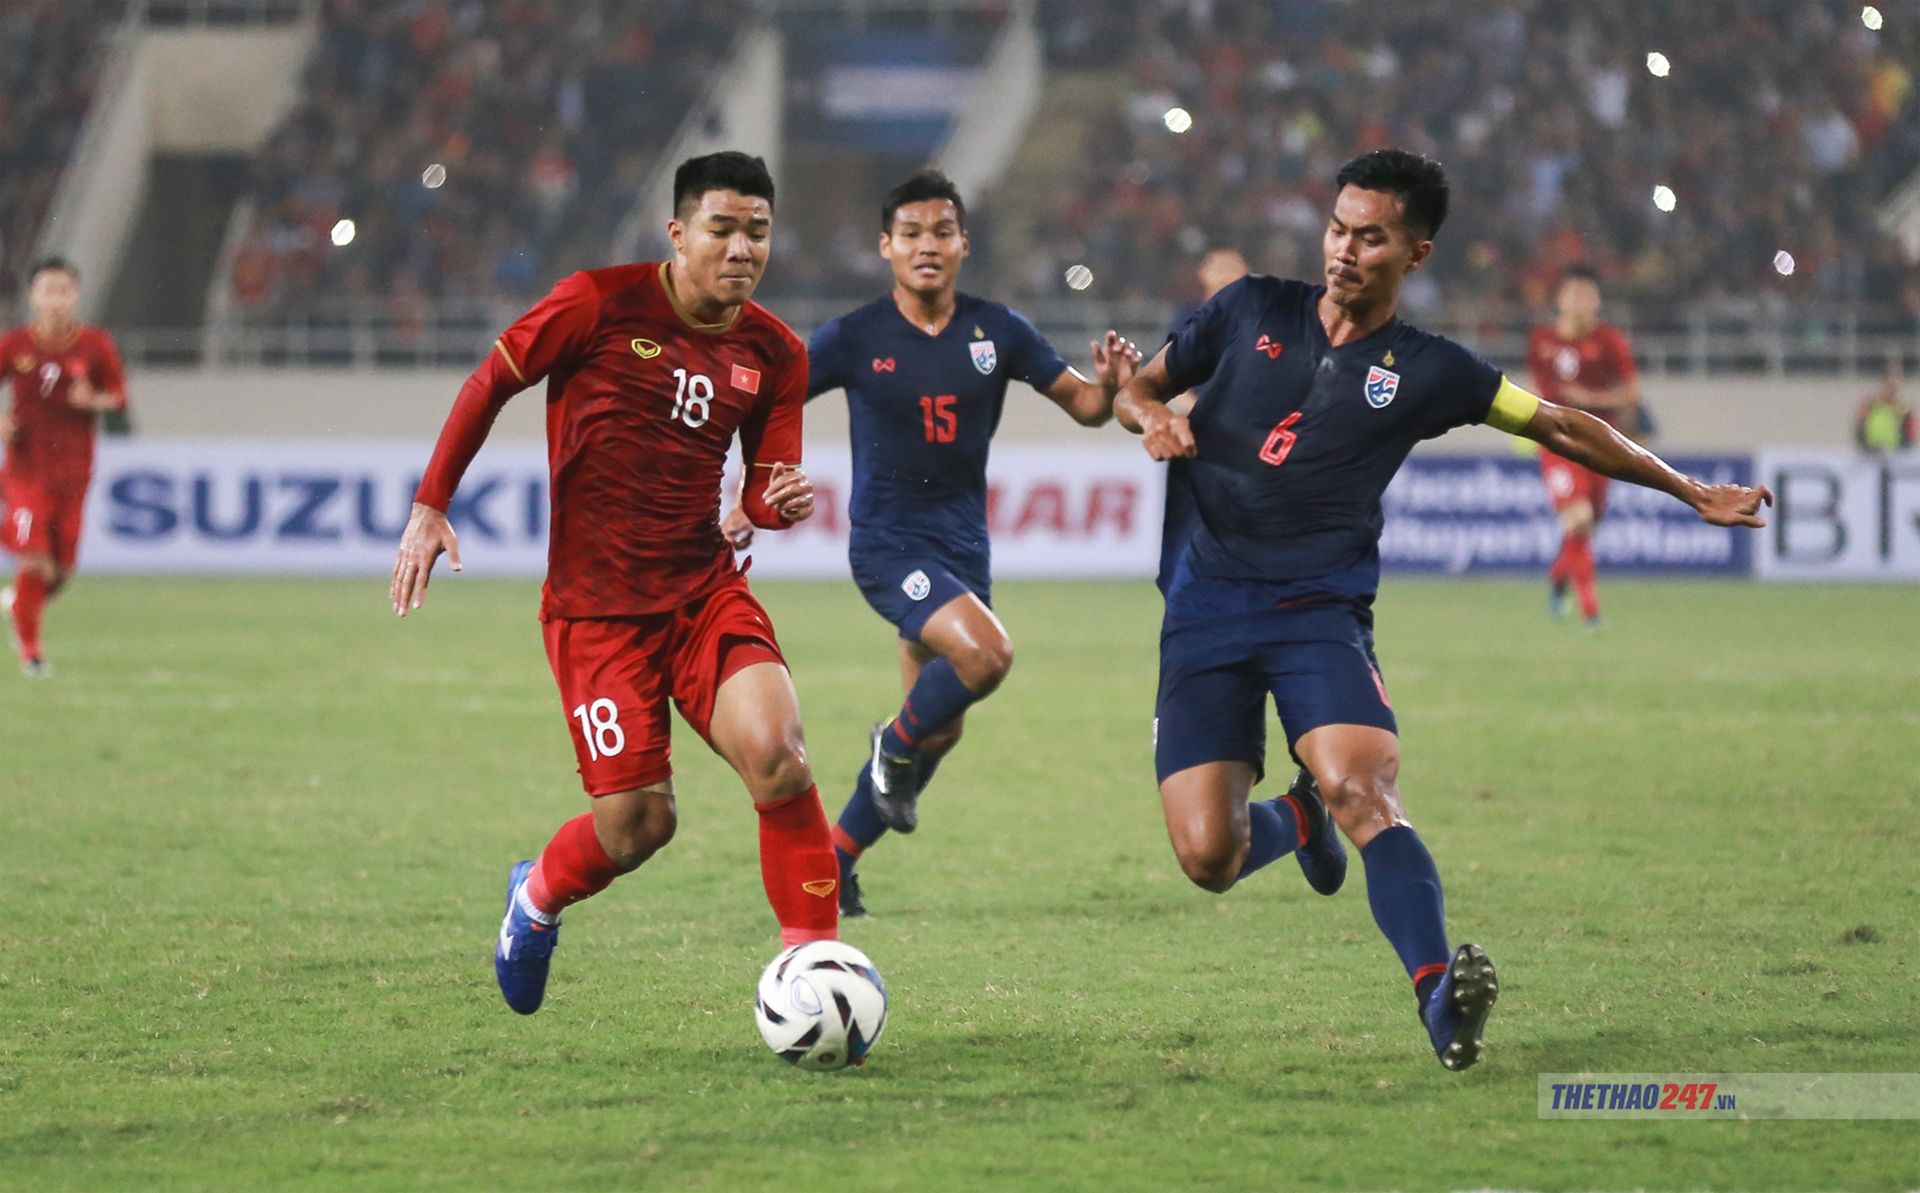 Đội tuyển U23 Thái Lan sẽ tập trung vào ngày FIFA Day